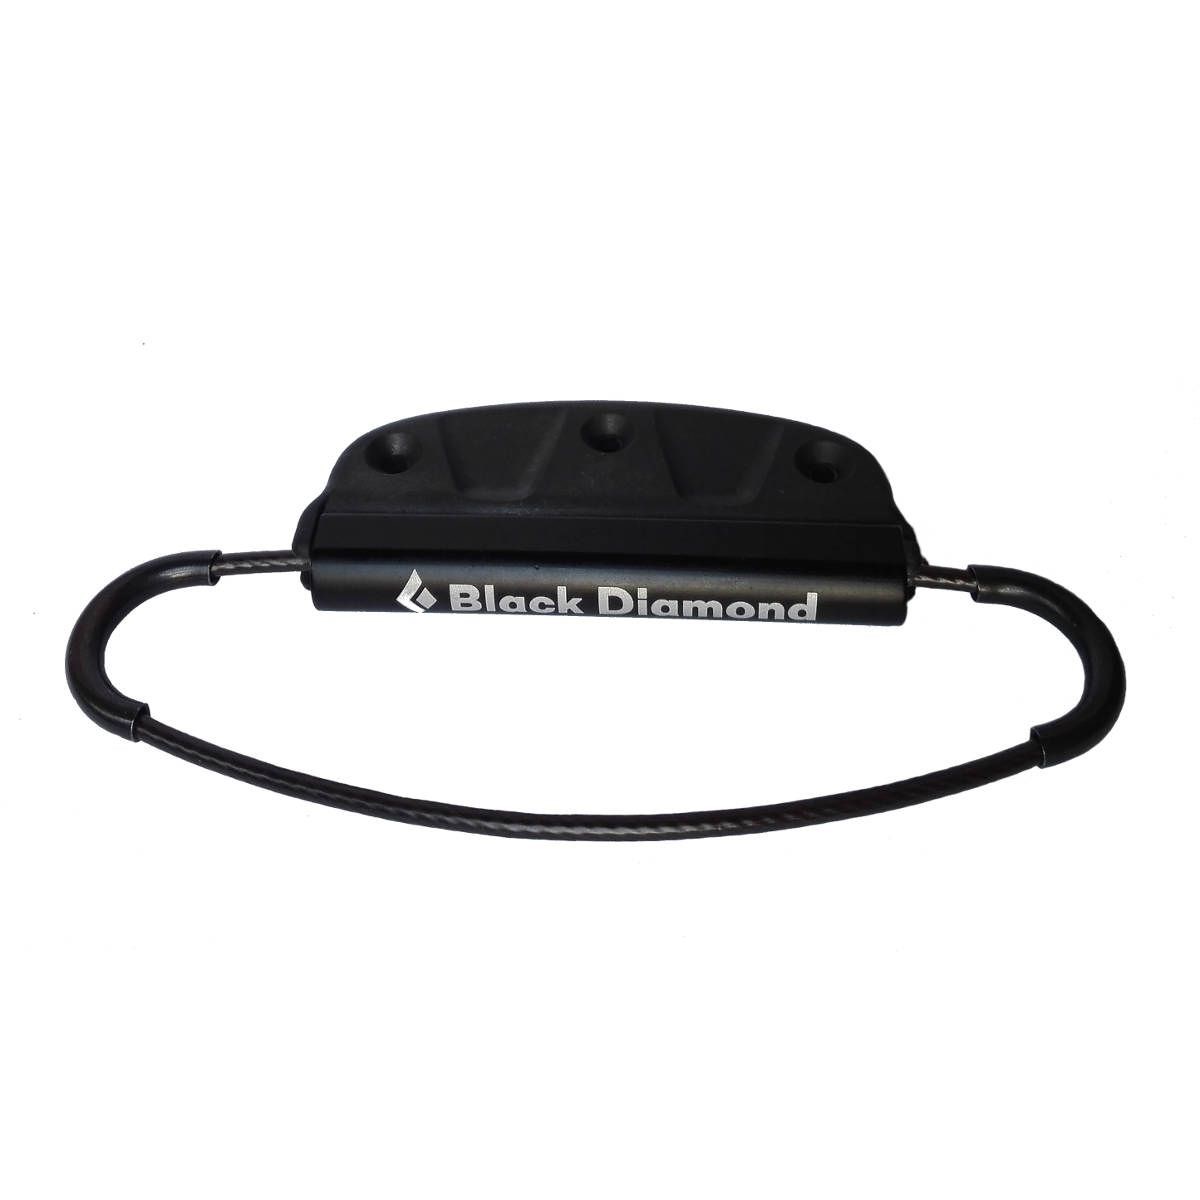 Upínání pásů Black Diamond Adjustable Tip Loops standard black Black Diamond 10010314 L-11